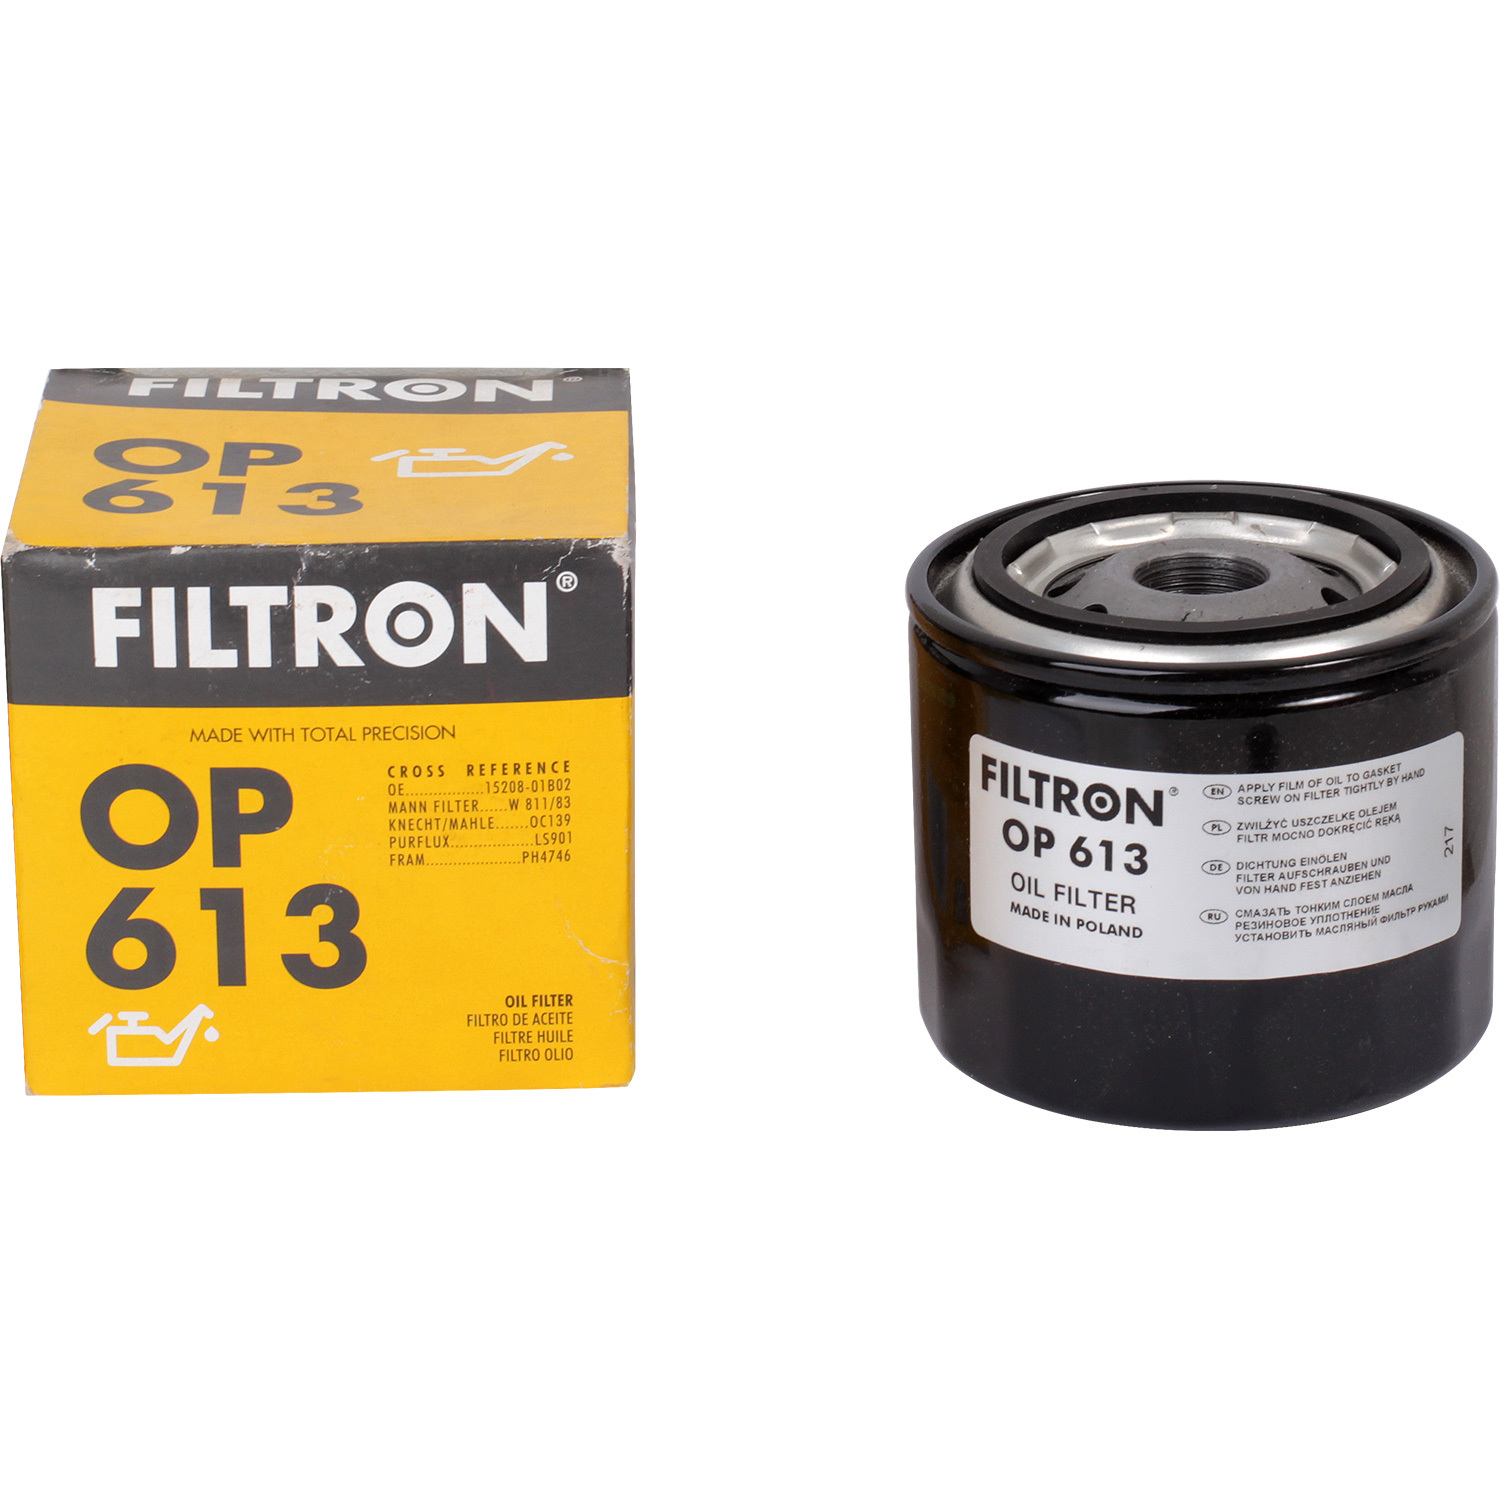 Фильтры Filtron Фильтр масляный Filtron OP613 фильтры filtron фильтр масляный filtron oe6852